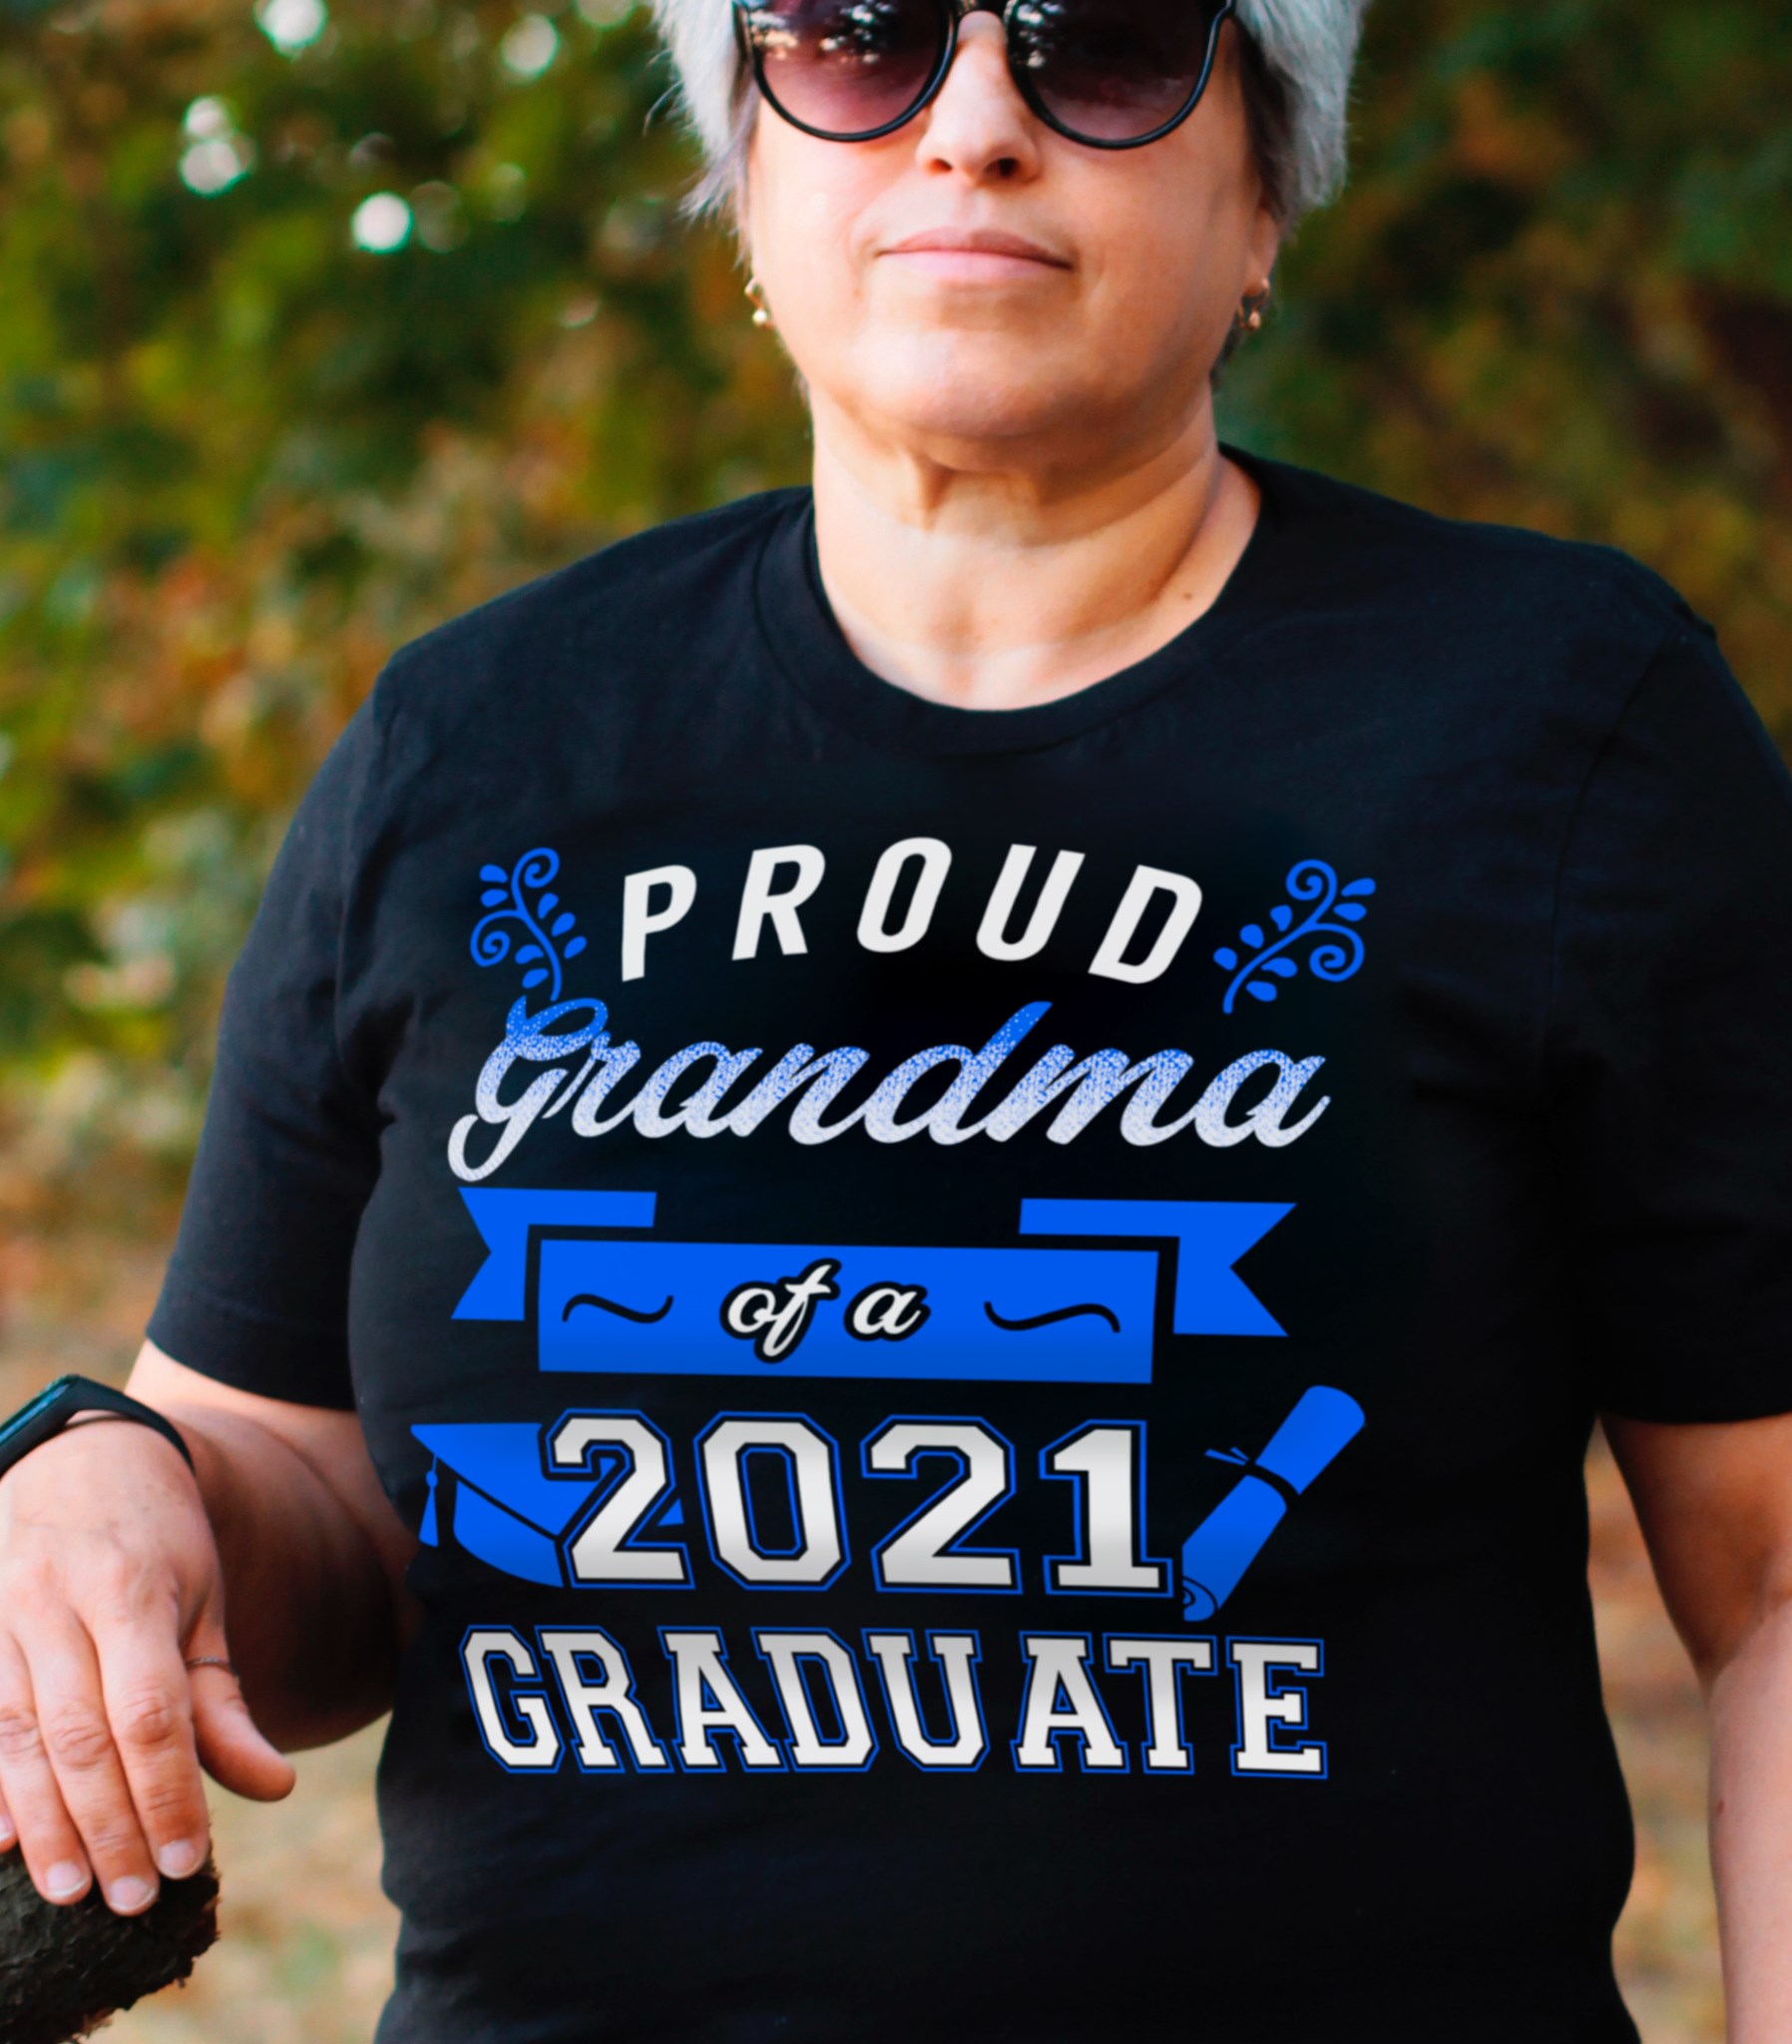 Proud grandma of a 2021 graduate